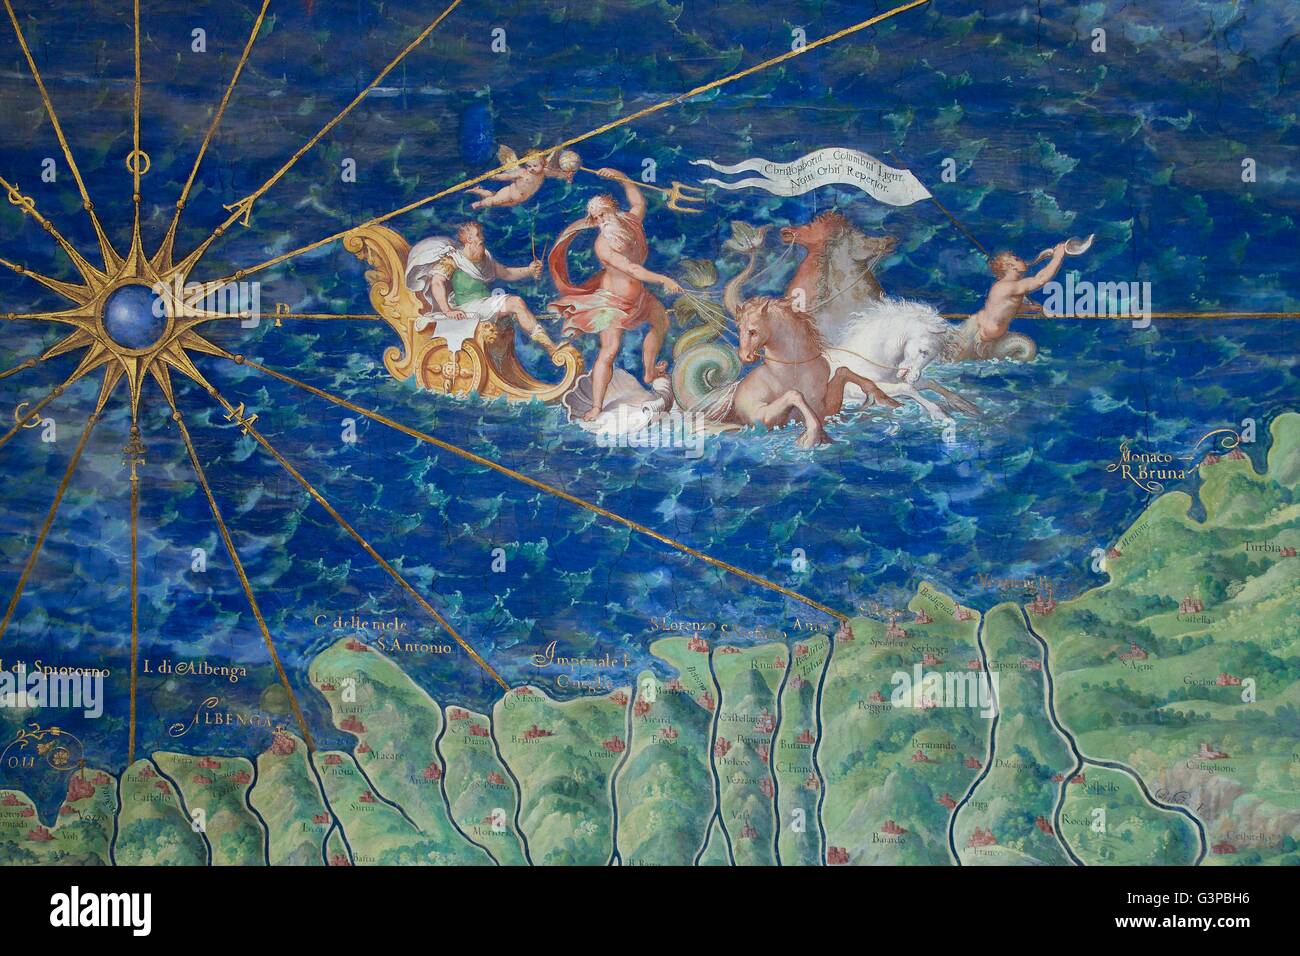 Poseidón se levanta con su carro desde el mar, Detalle de mapa de Liguria, la Galería de los mapas, los Museos del Vaticano, Roma, Italia Foto de stock